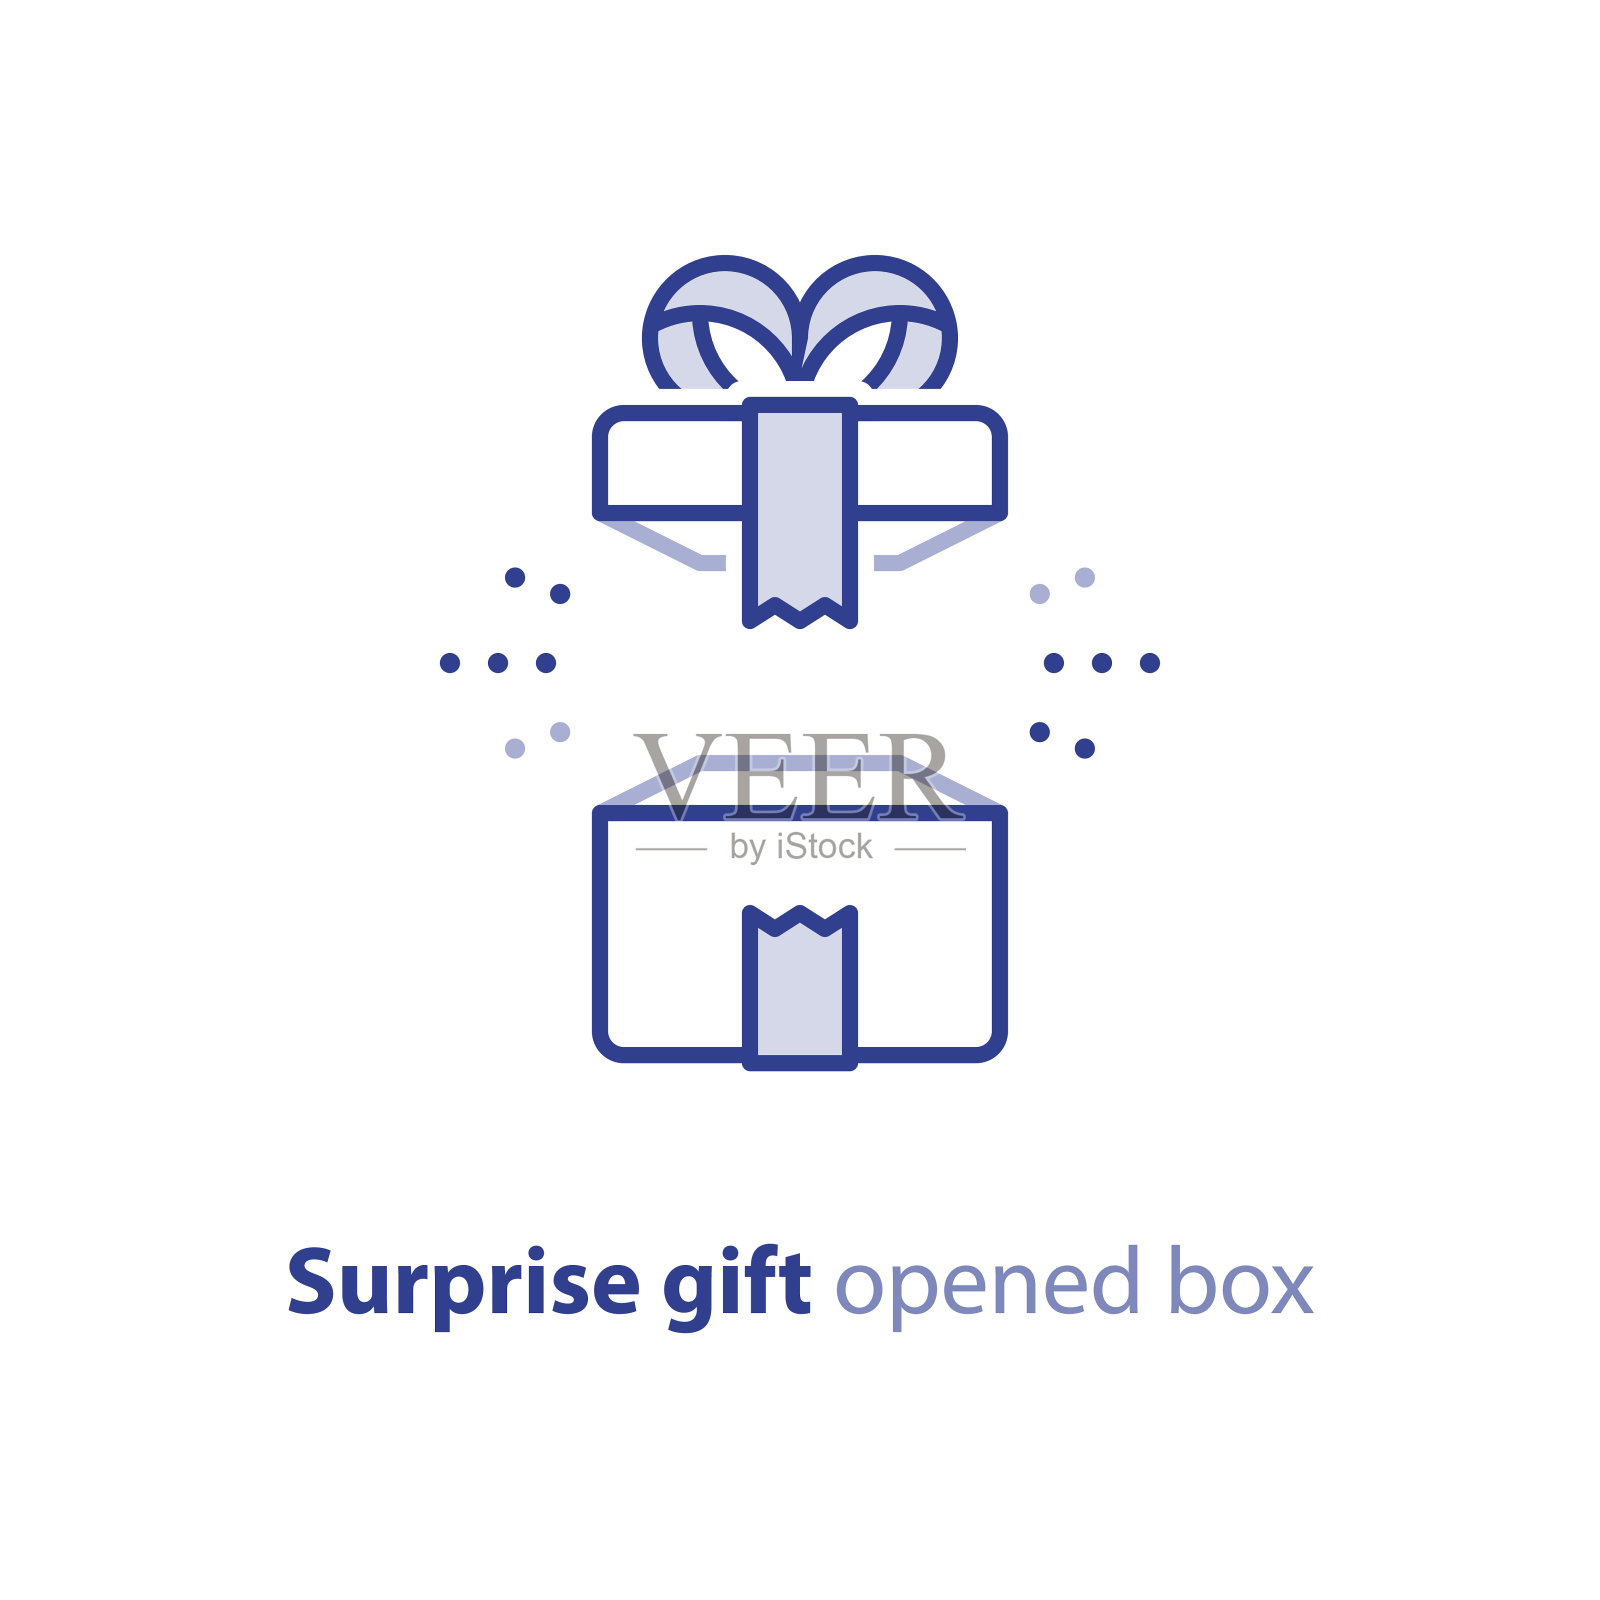 超级礼物，惊喜礼物，惊喜打开的盒子，生日快乐，促销套餐设计元素图片